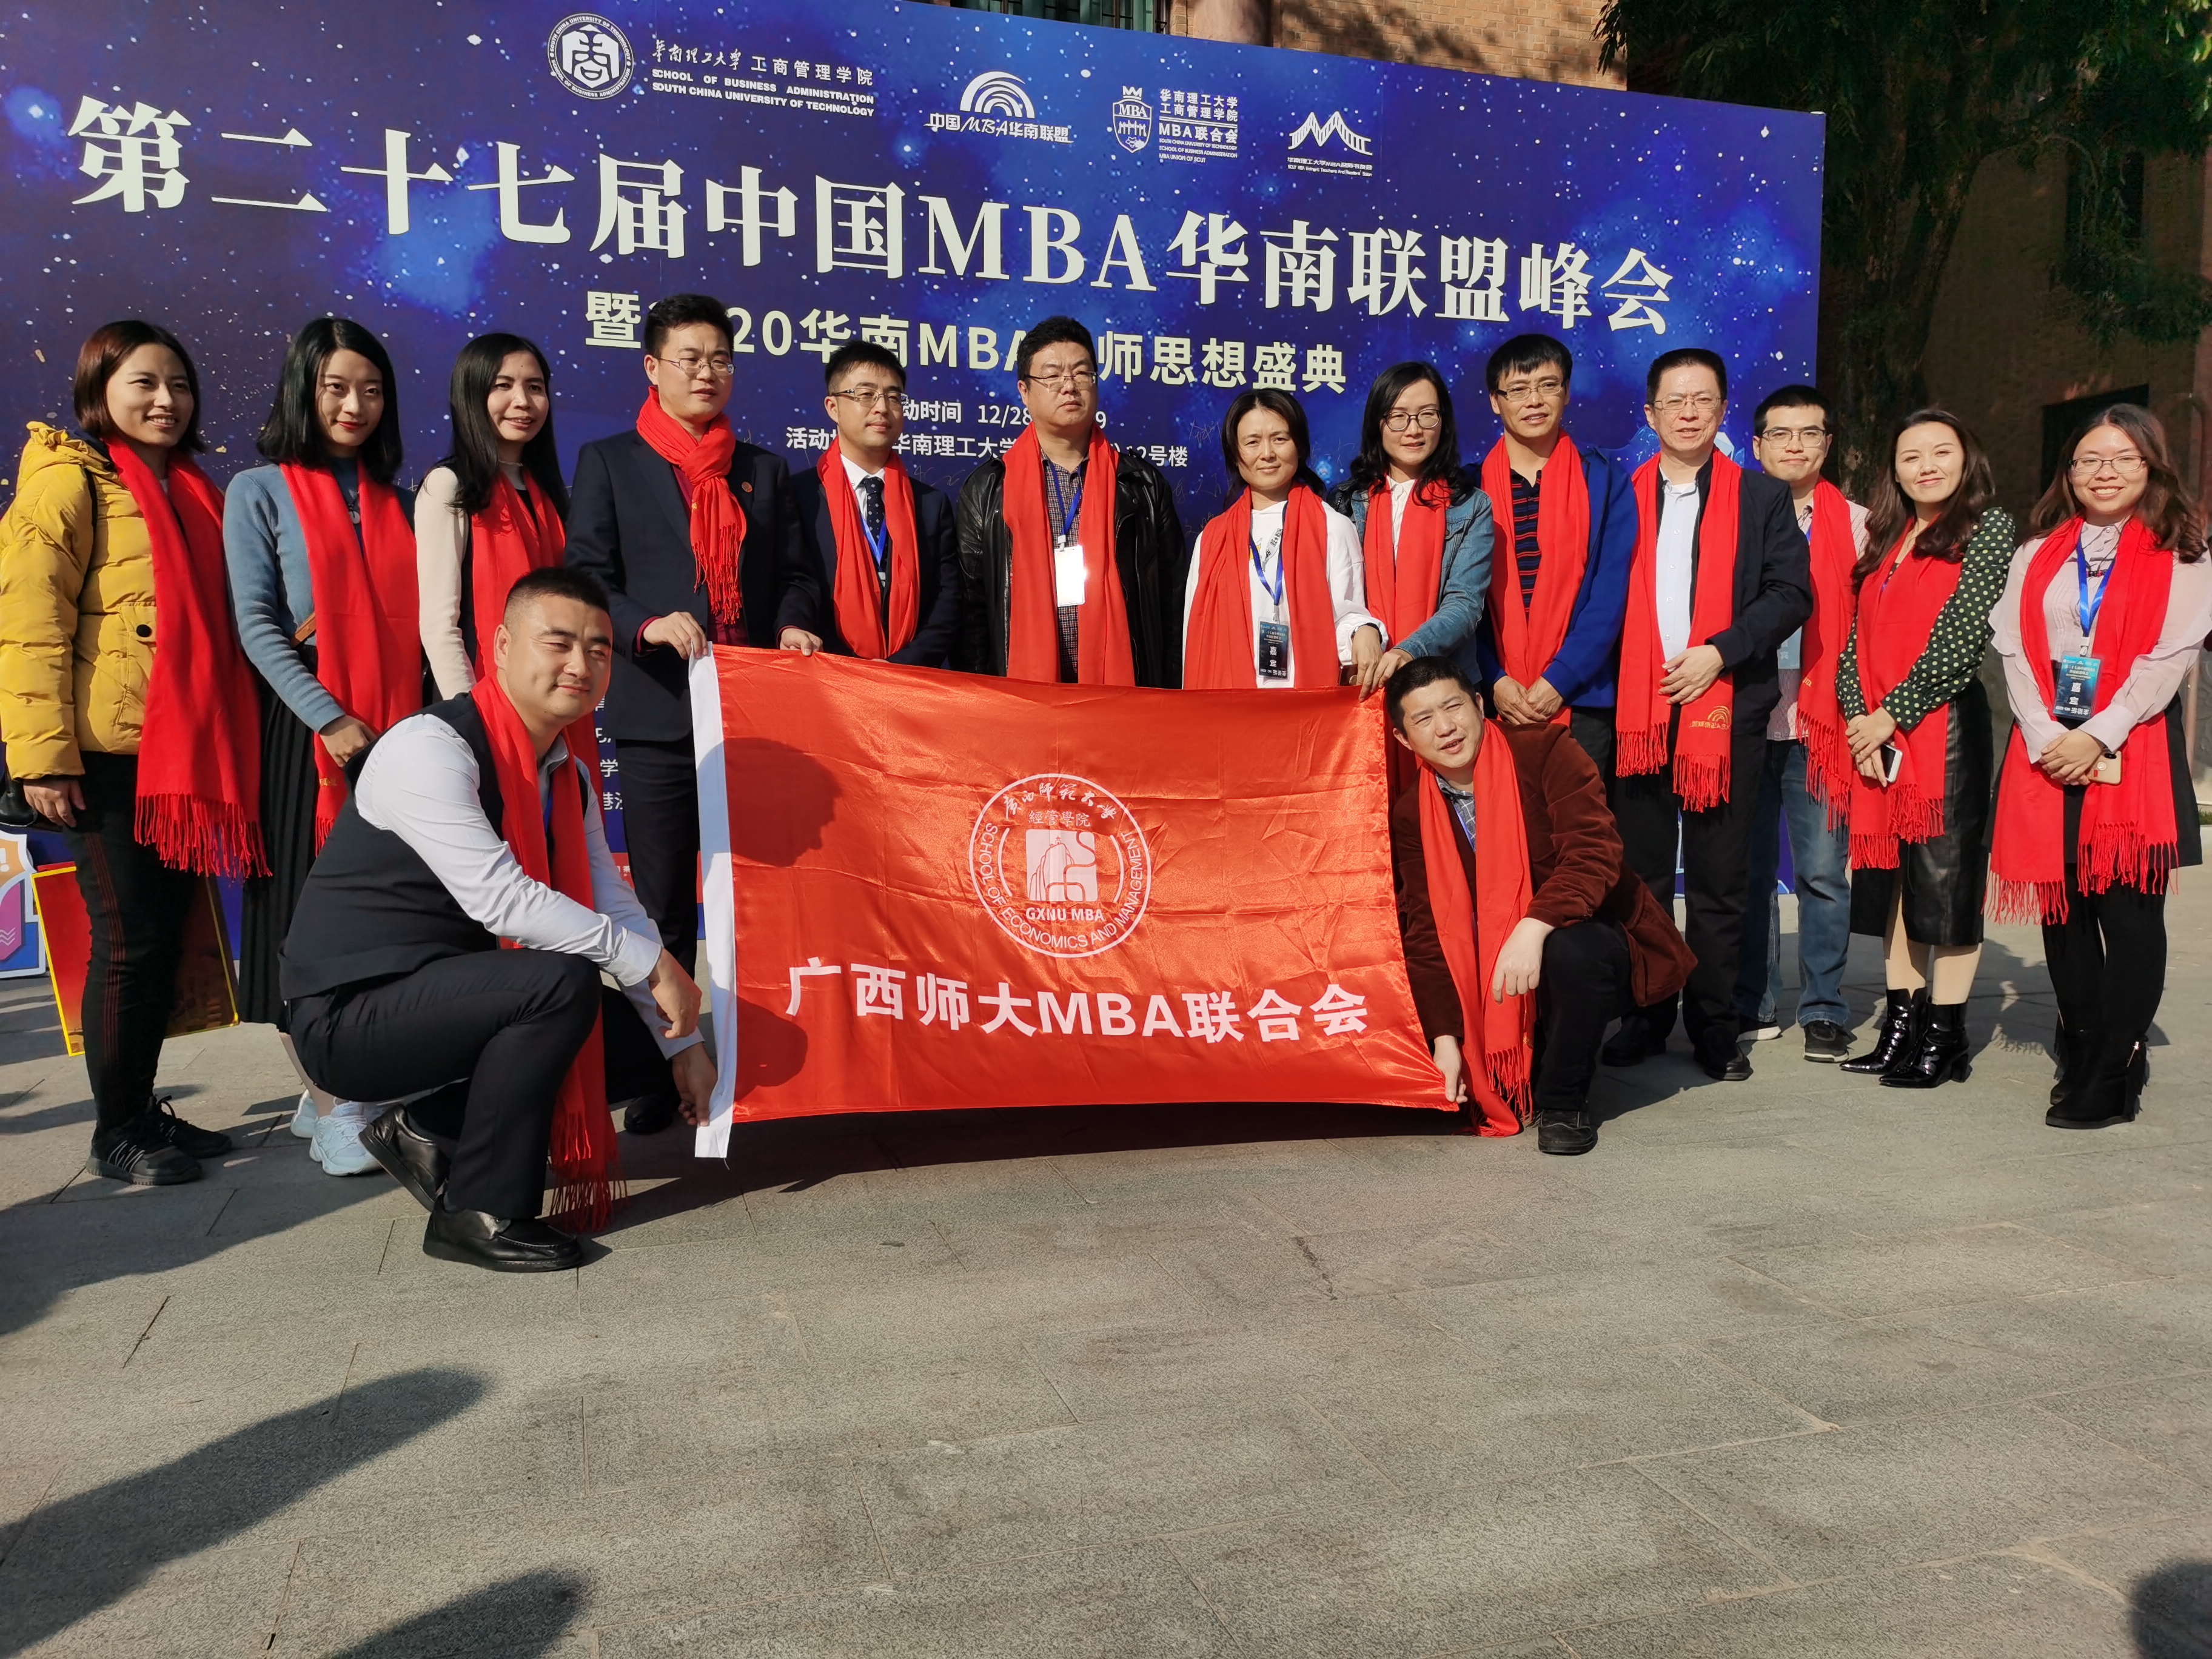 广西师大MBA代表参加第27届MBA华南联盟峰会暨庆贺新年-工作动态-广西师大MBA校友会